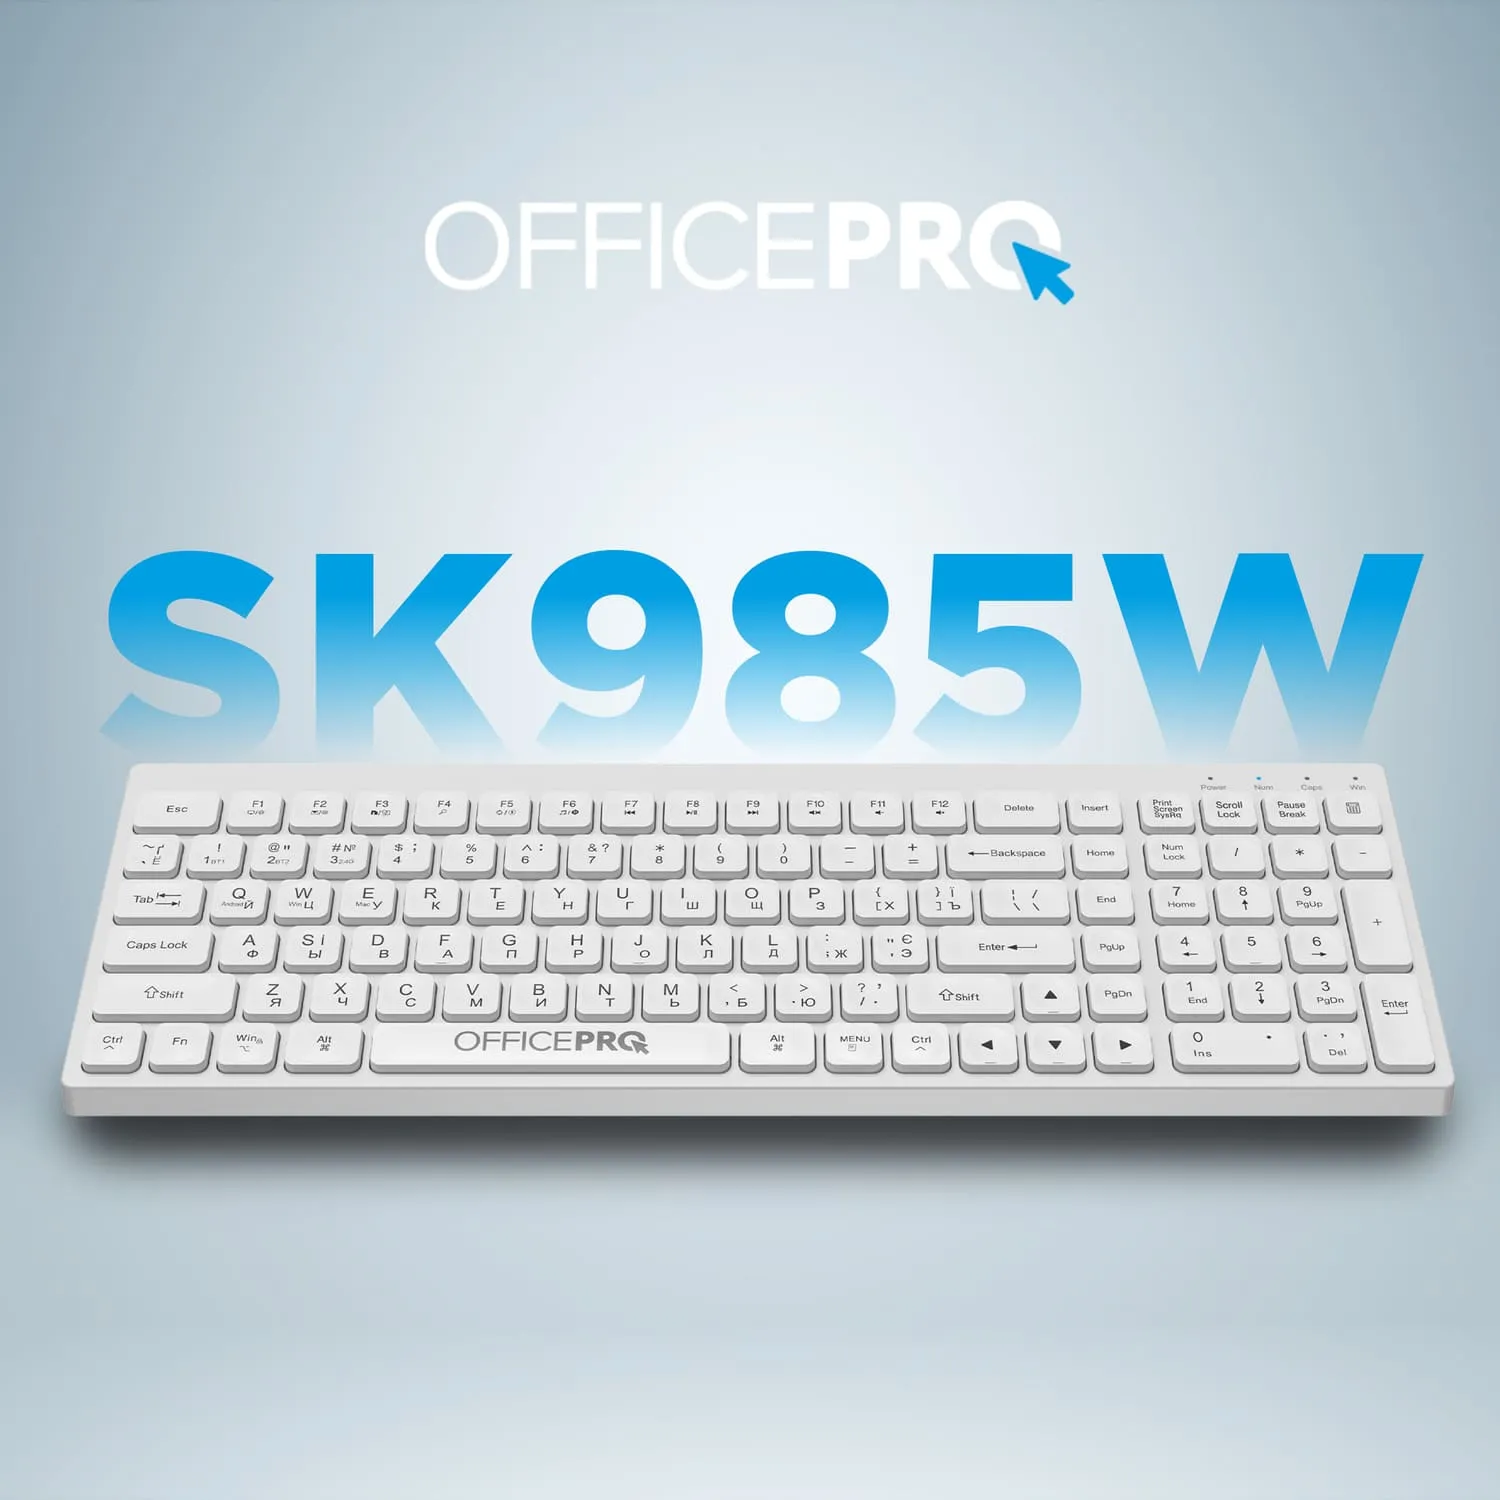 OfficePro SK985